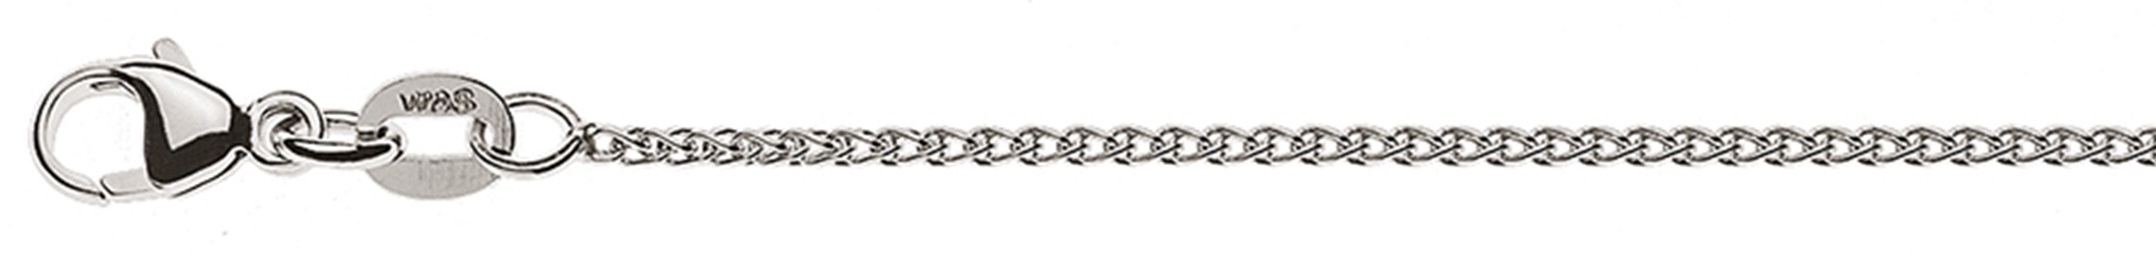 AURONOS Élégance Necklace white gold 14K cable chain 60cm 1.2mm